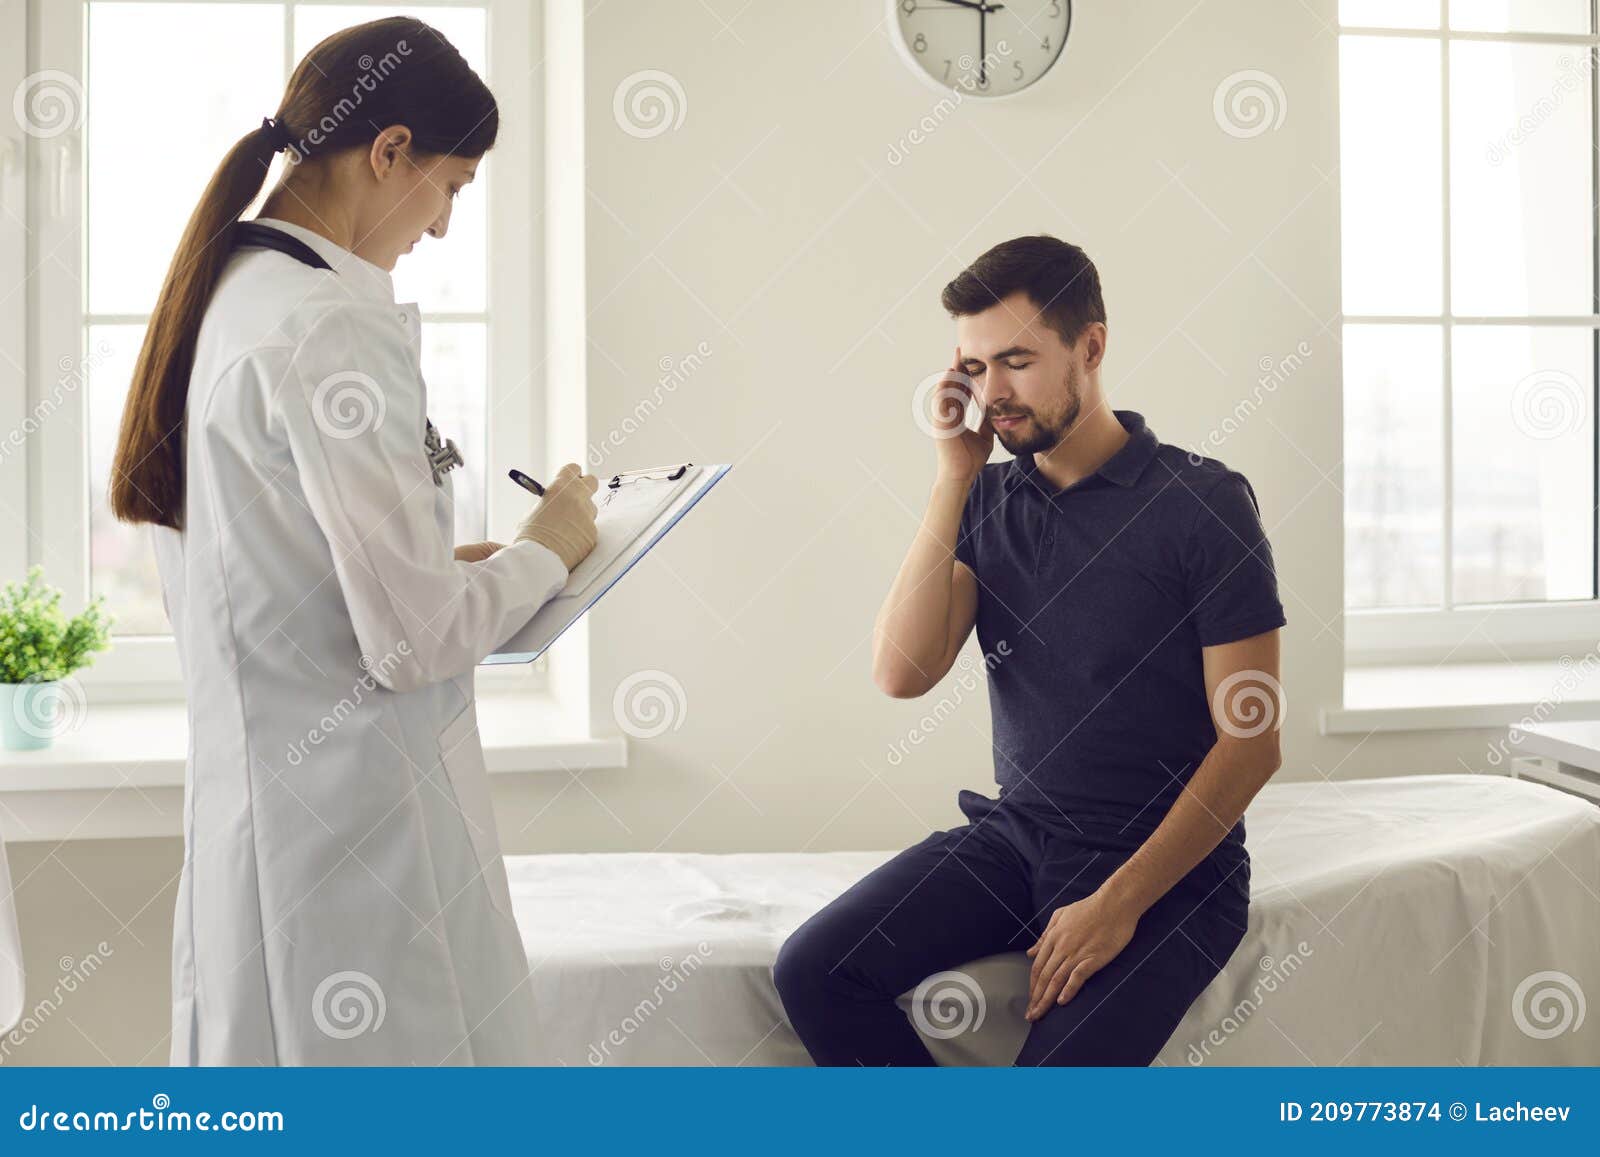 a enfermeira está anotando a saúde do paciente e pedindo algumas